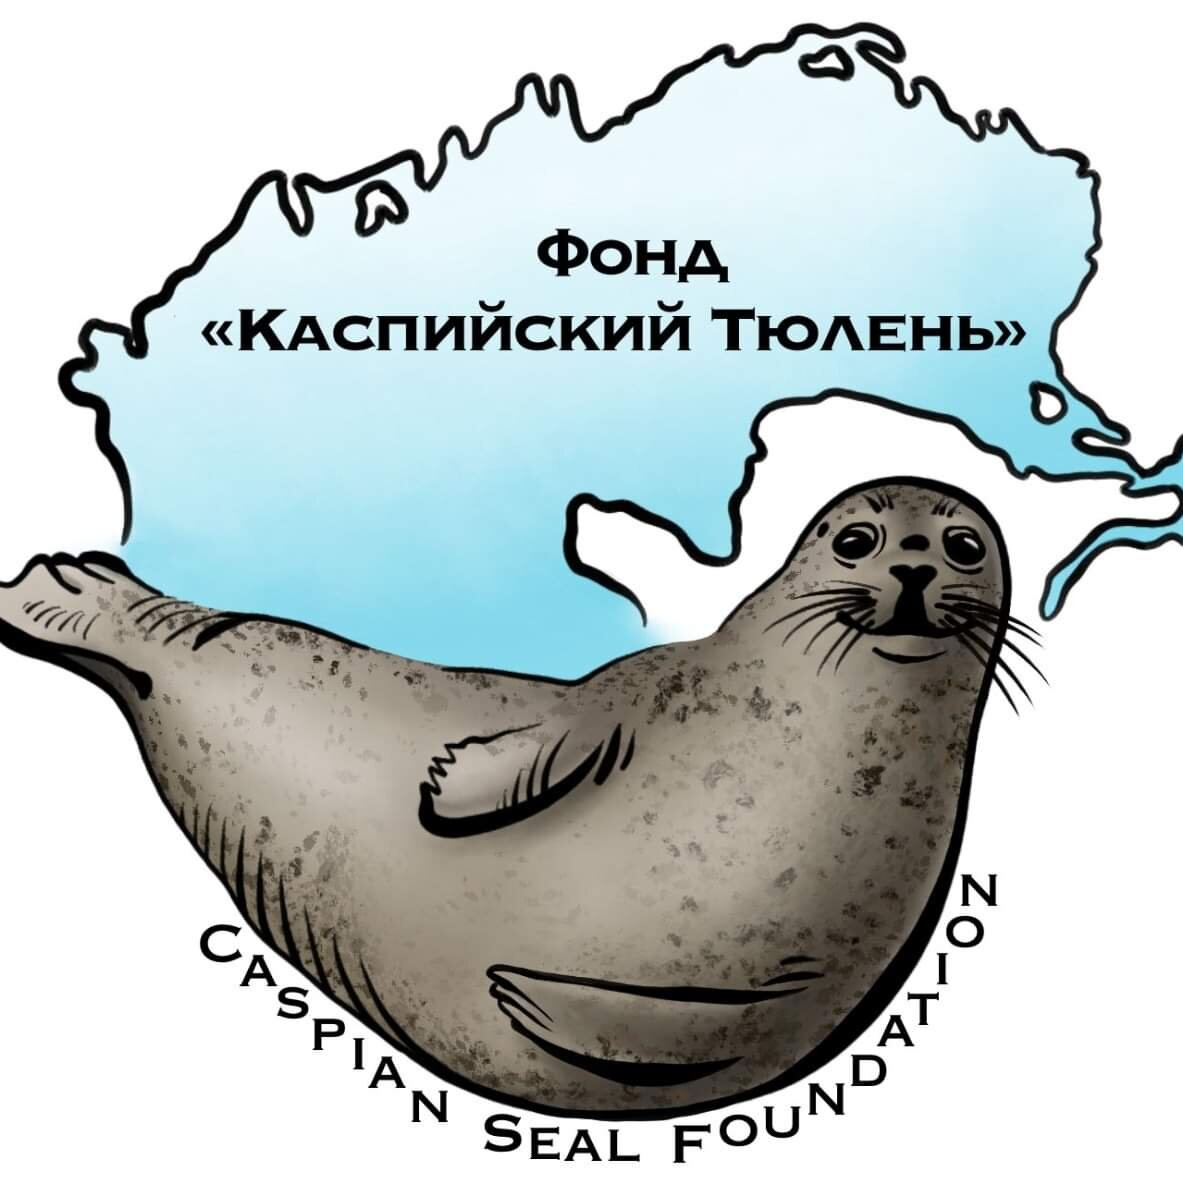 Фонд "Каспийский тюлень" основан 5 ноября 2020 года и является общественной организацией.